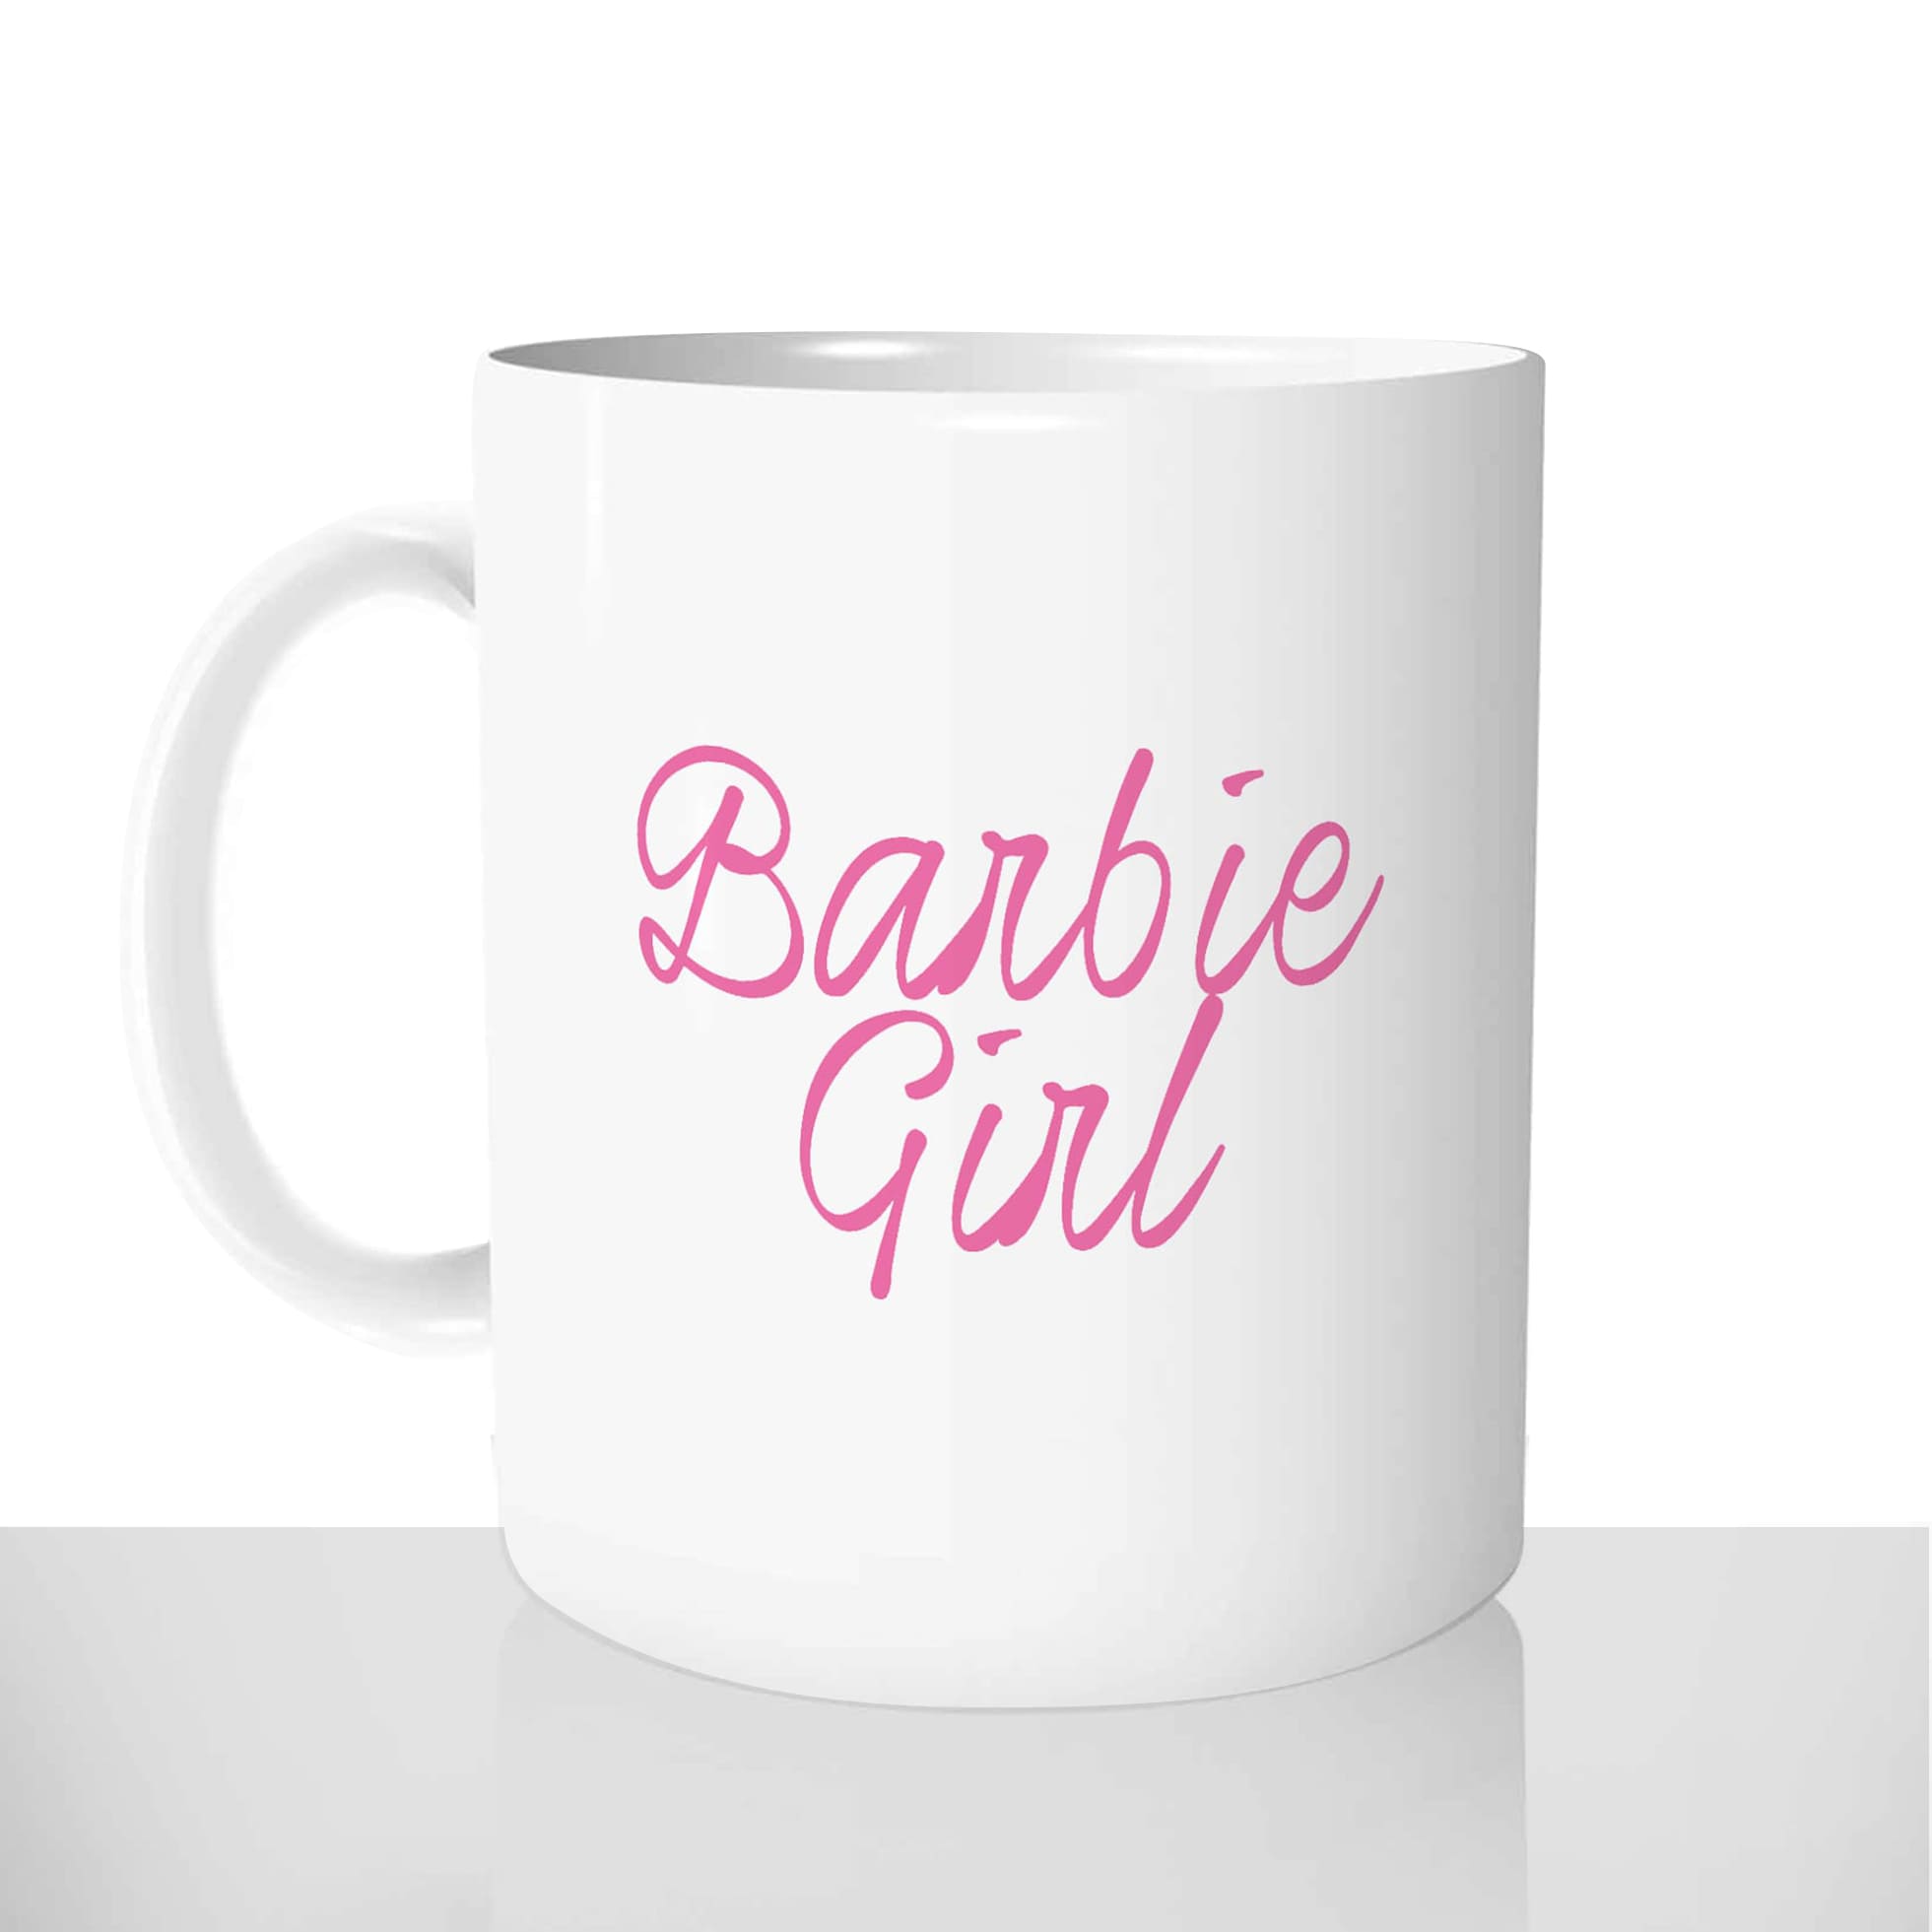 mug classique en céramique 11oz personnalisé personnalisation photo barbie girl femme personnalisable offrir cadeau chou